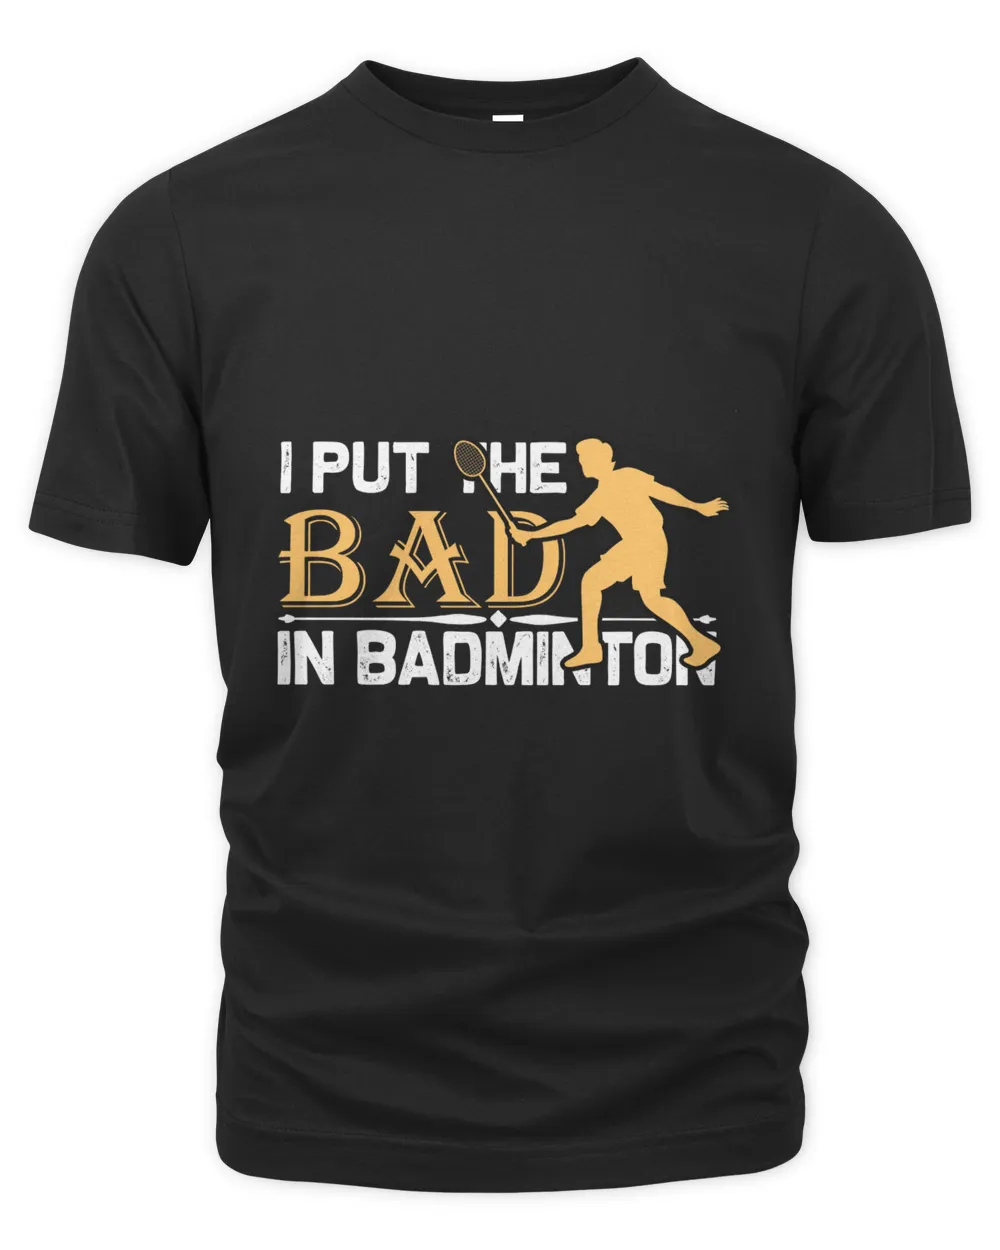 I Put Shirt, Badminton Shirt,Badminton T-shirt,Funny Badminton Shirt, Badminton Gift,Sport Shirt